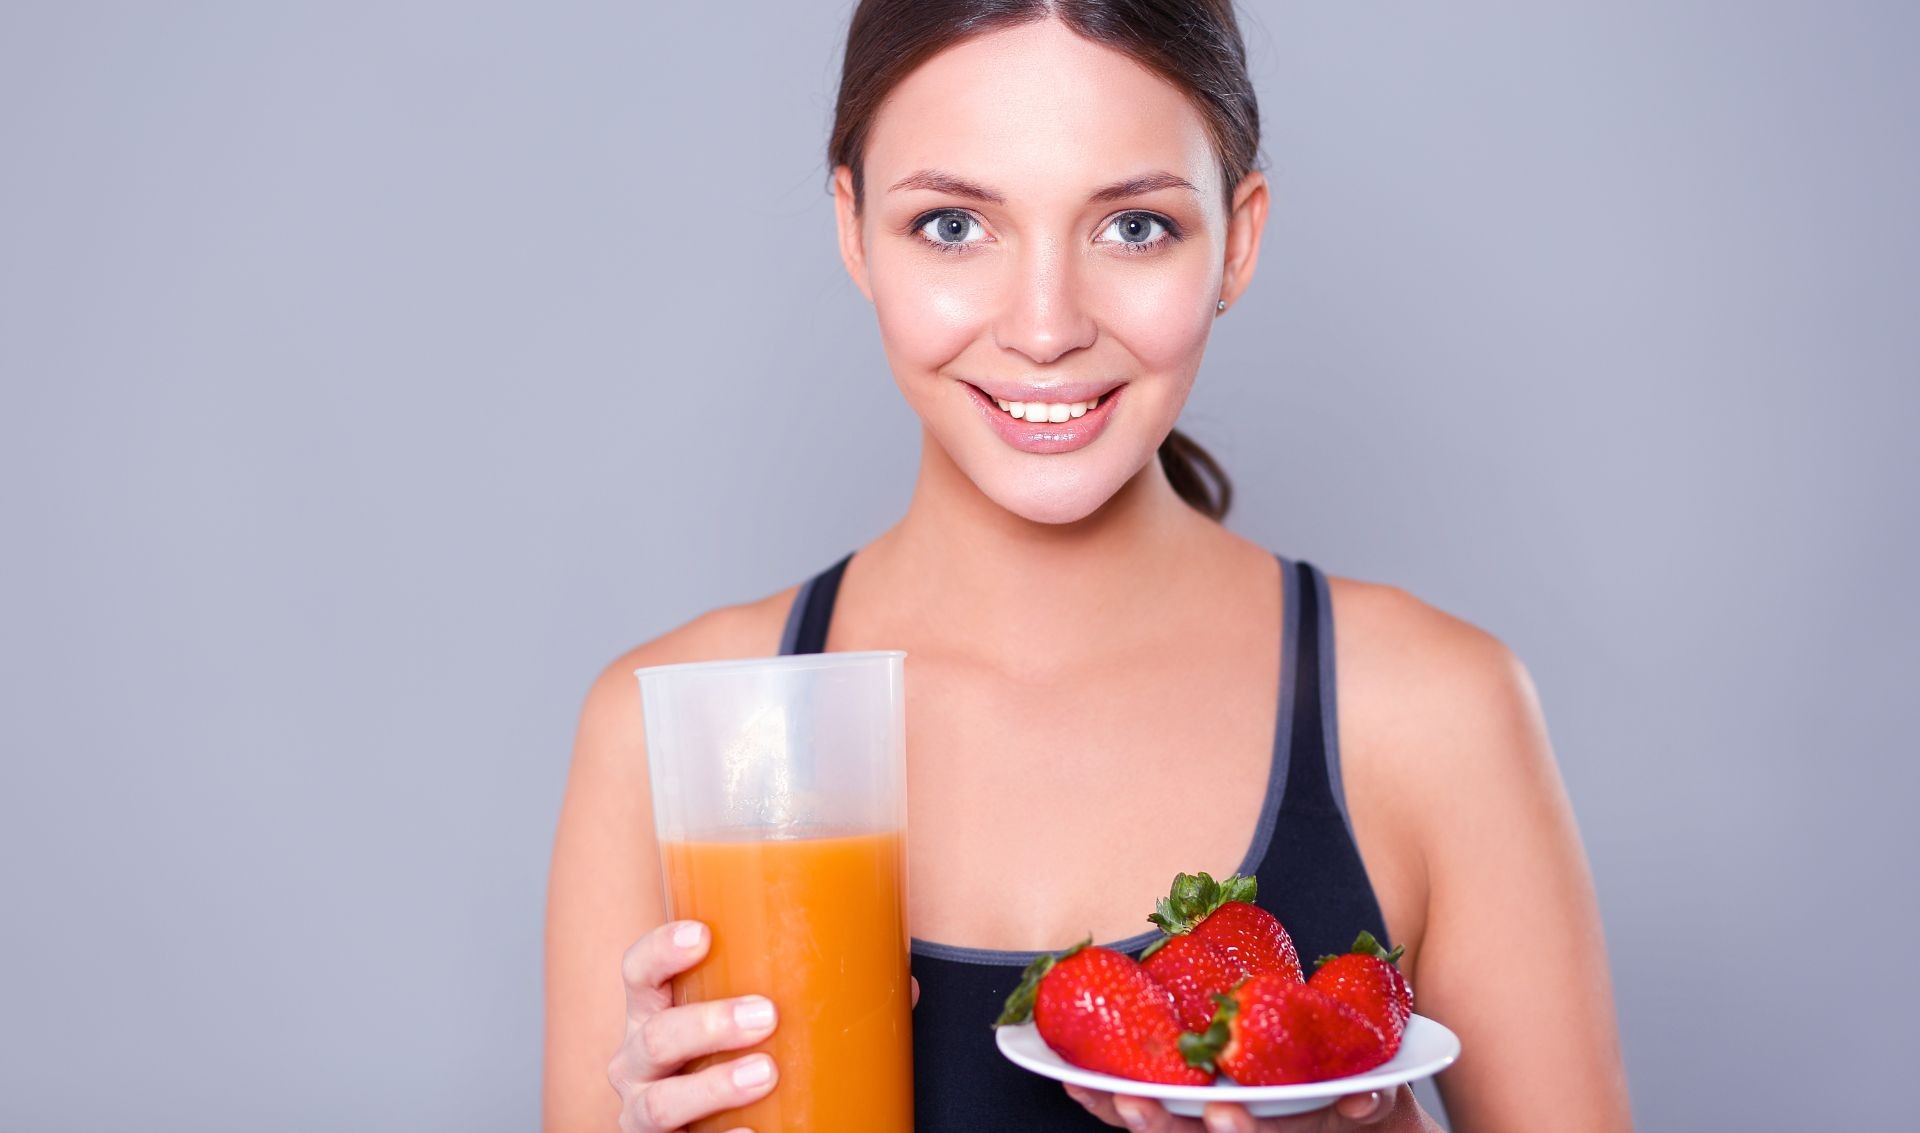 mujer joven sonriendo, sostiene con sus manos un vaso con jugo y un plato con fresas